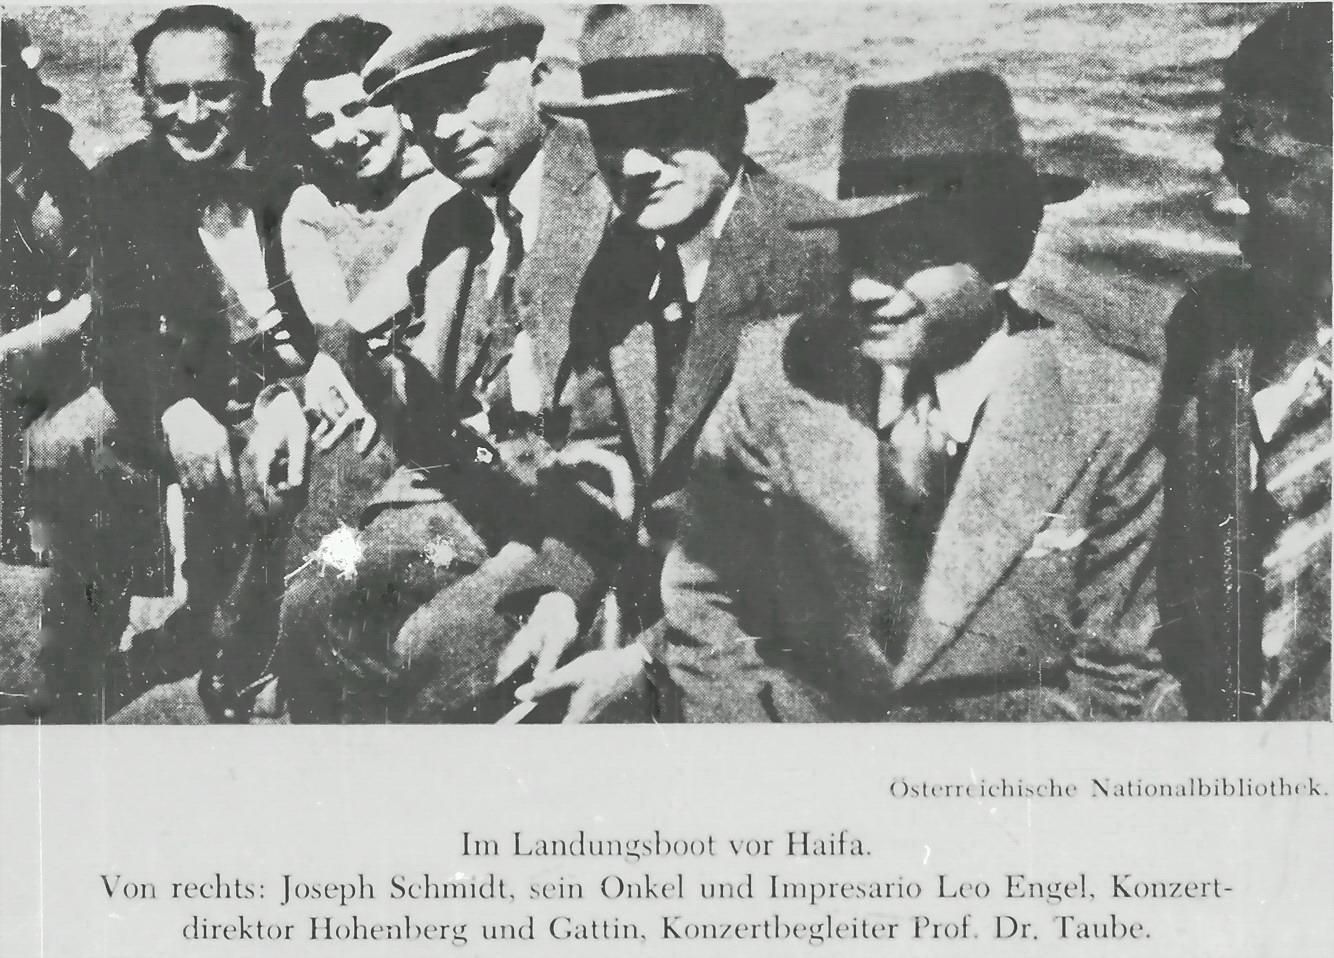 <b>Снимок, сделанный по прибытию в порт Хайфы (1934)</b>